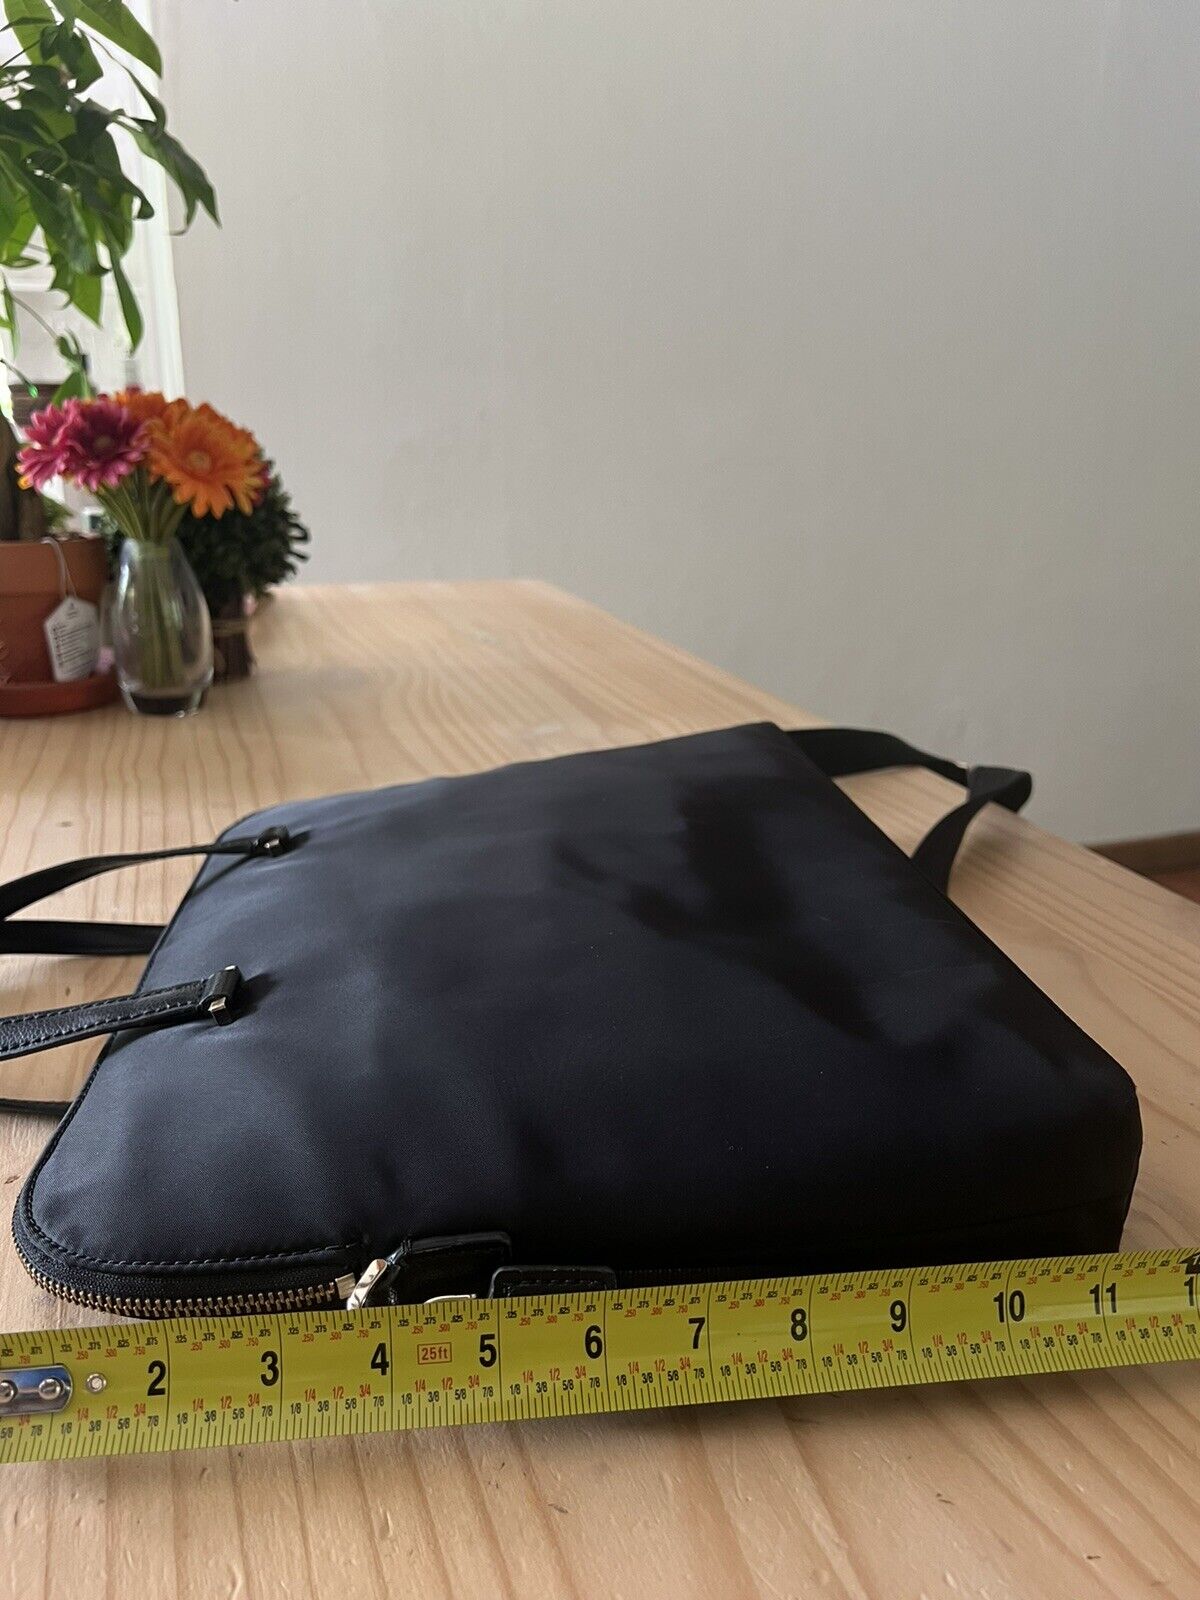 kate spade laptop bag black (See Pics For Details) - image 5